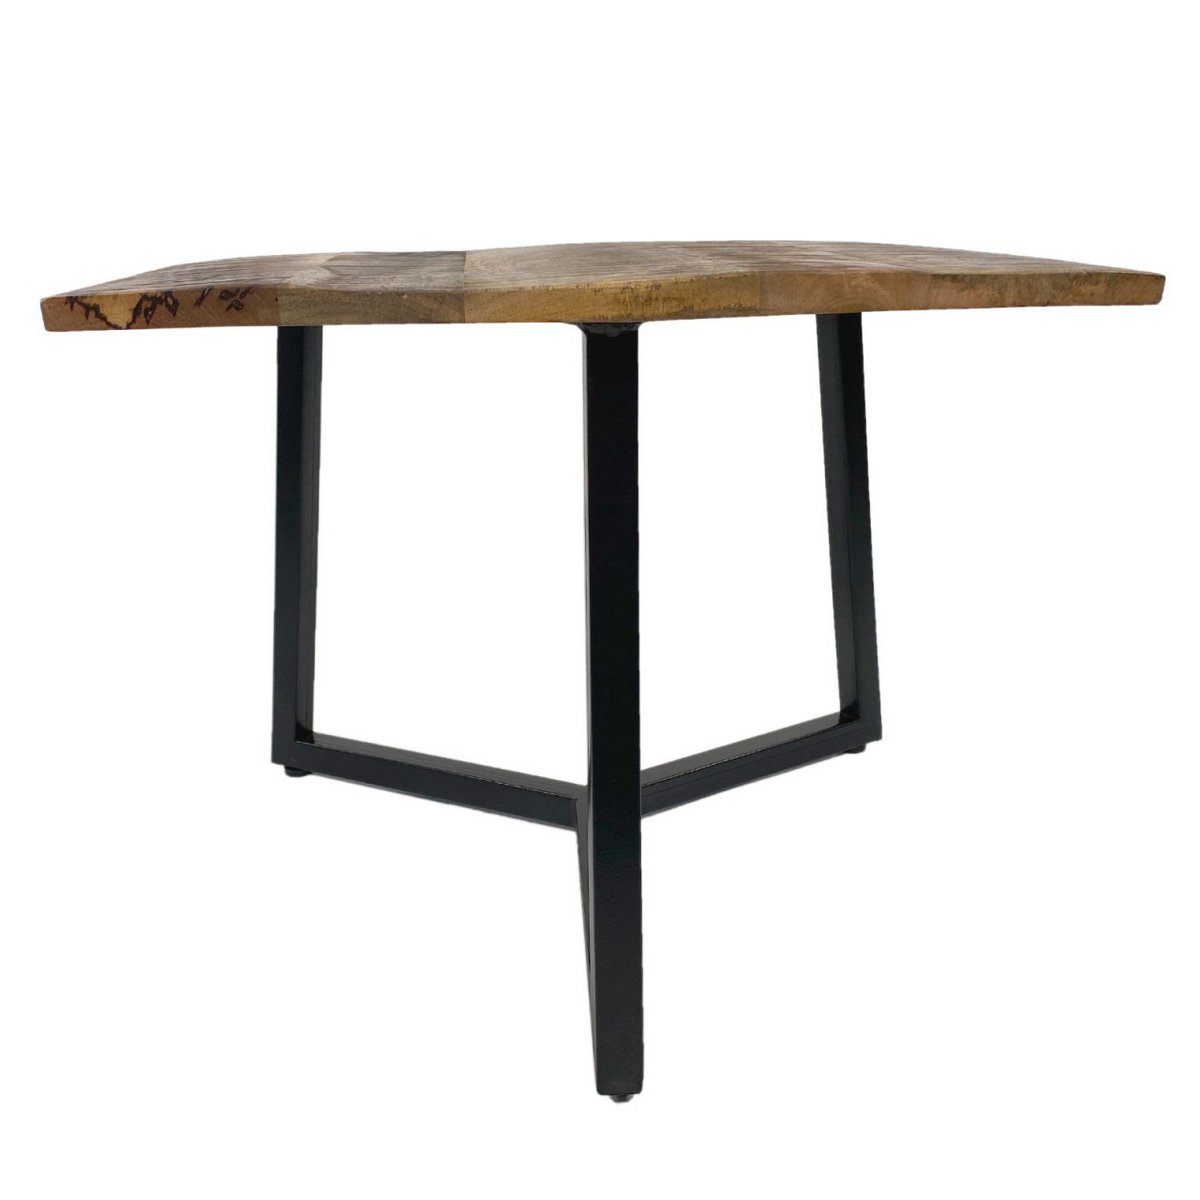 Beistelltisch 56 x 47 cm nachhaltig Wohnzimmer Tisch Couchtisch Nizza Metall-Gestell schwarz - weiß variant: reinweiß - tabacco,color: white